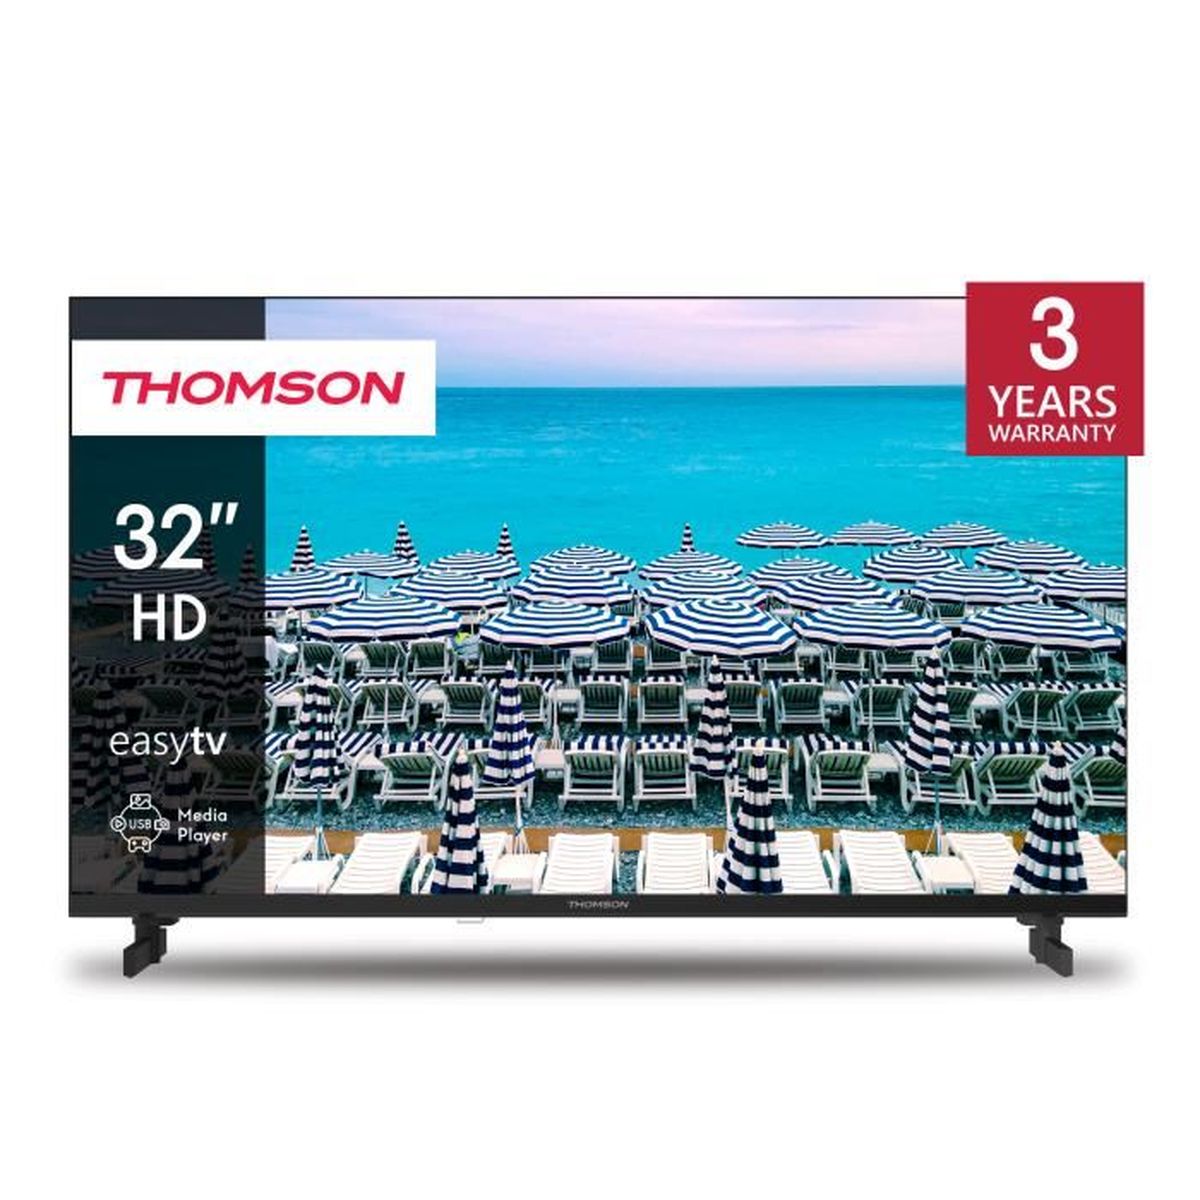 Televisión Smart TV Full HD 21,5 (55 cm) Inovtech